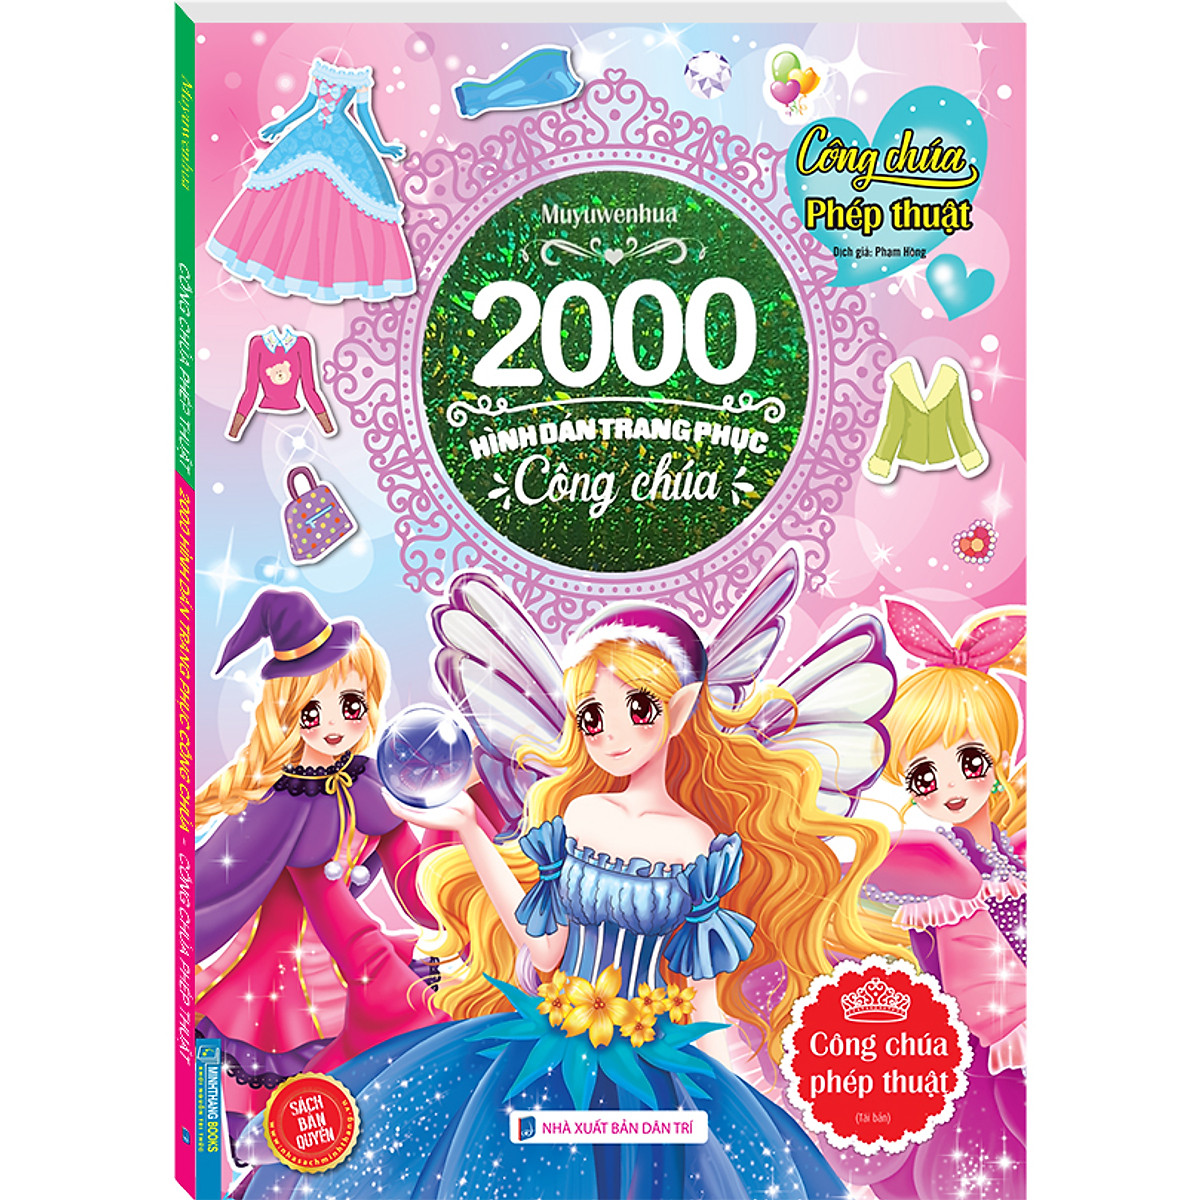 2000 hình dán trang phục công chúa - Công chúa phép thuật (sách ...